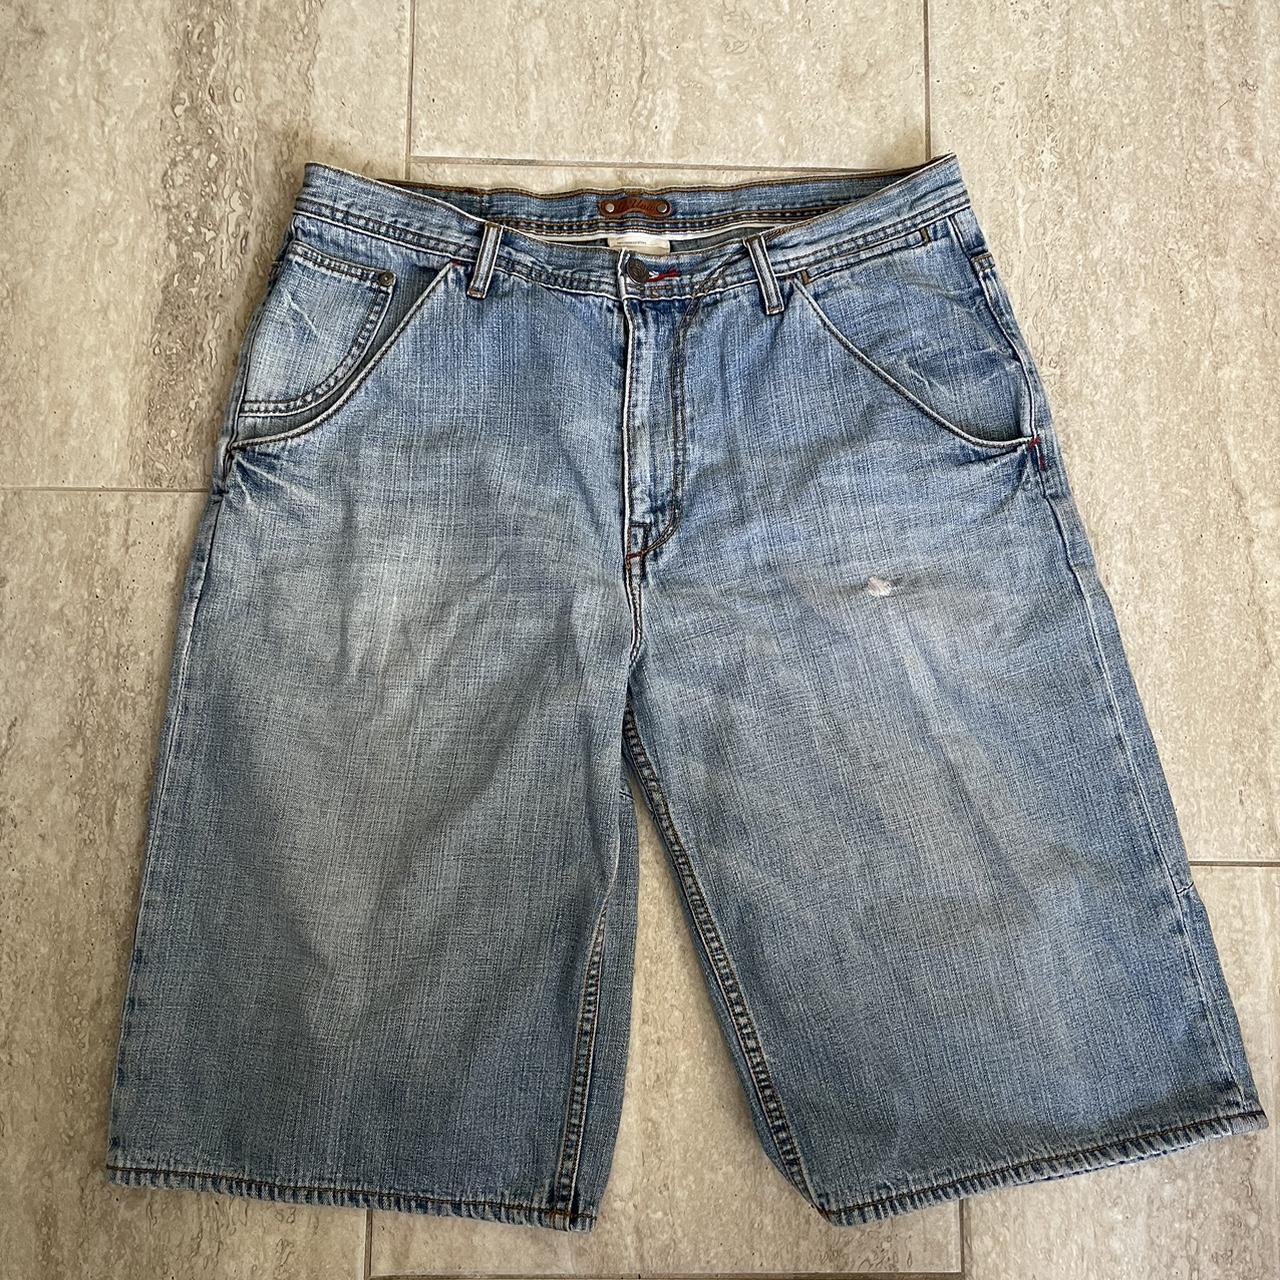 Vintage Y2K G-Unit baggy denim shorts (Jorts) with... - Depop